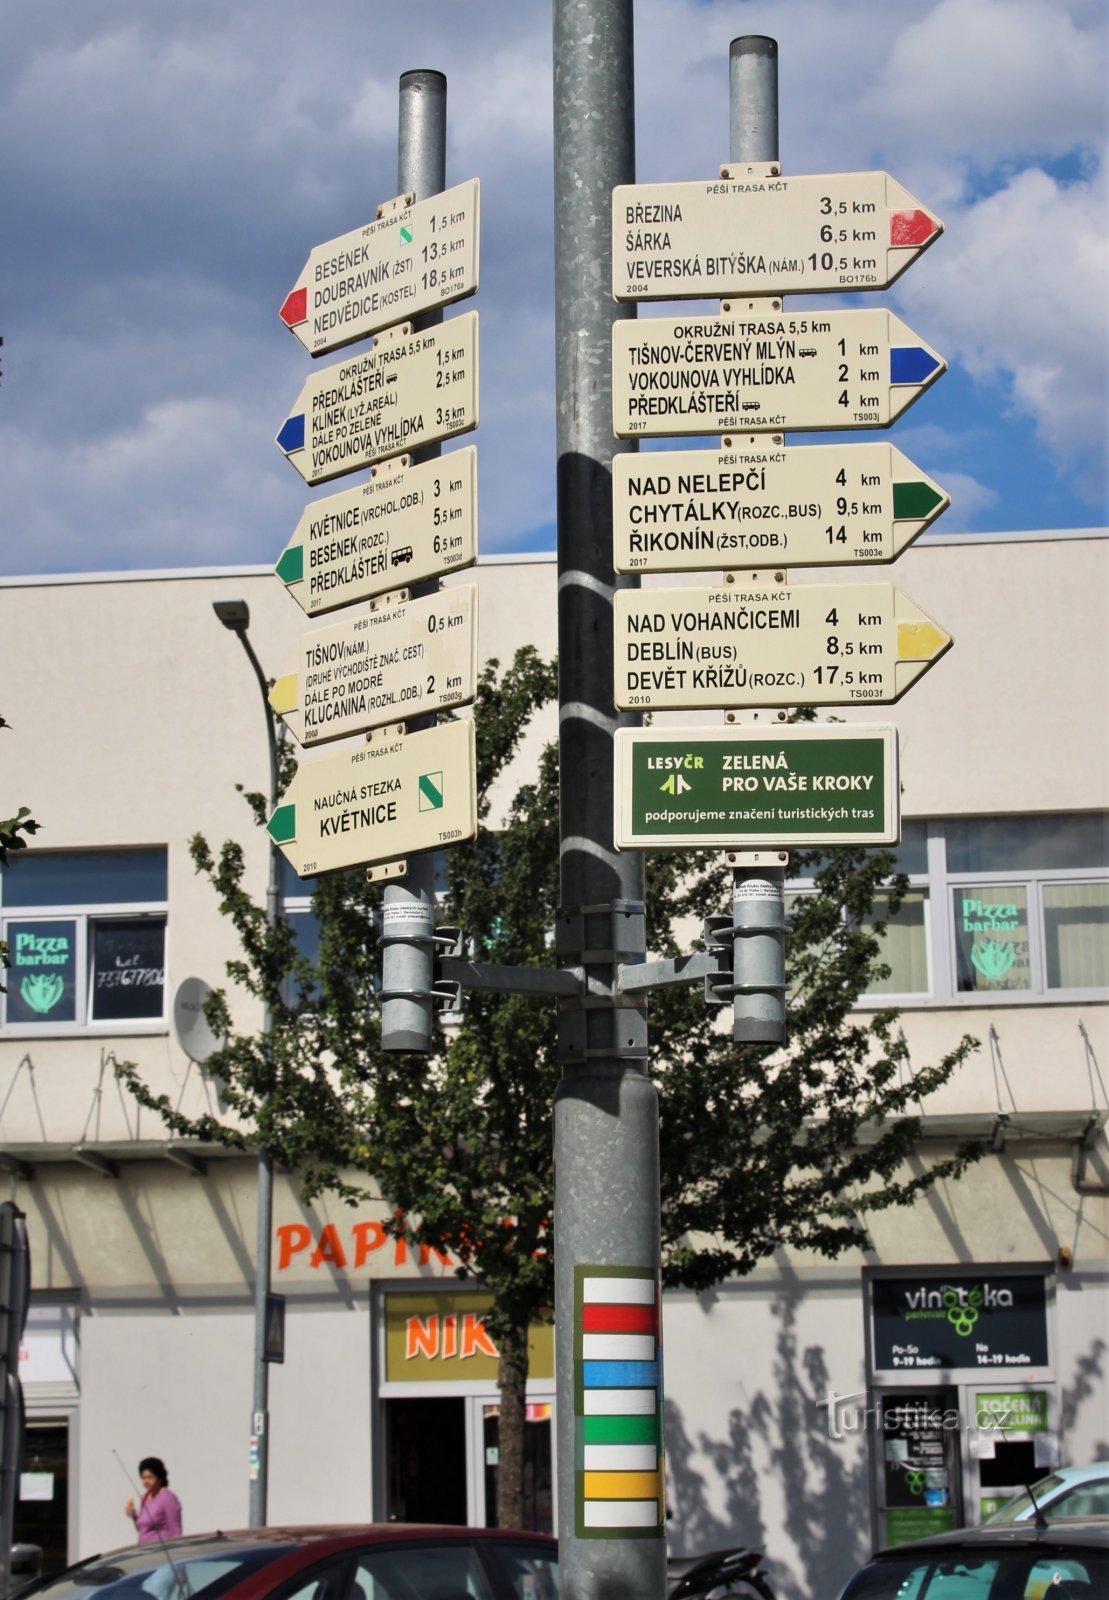 Przed budynkiem dworca znajduje się dwustronny przewodnik turystyczny we wszystkich czterech kolorach